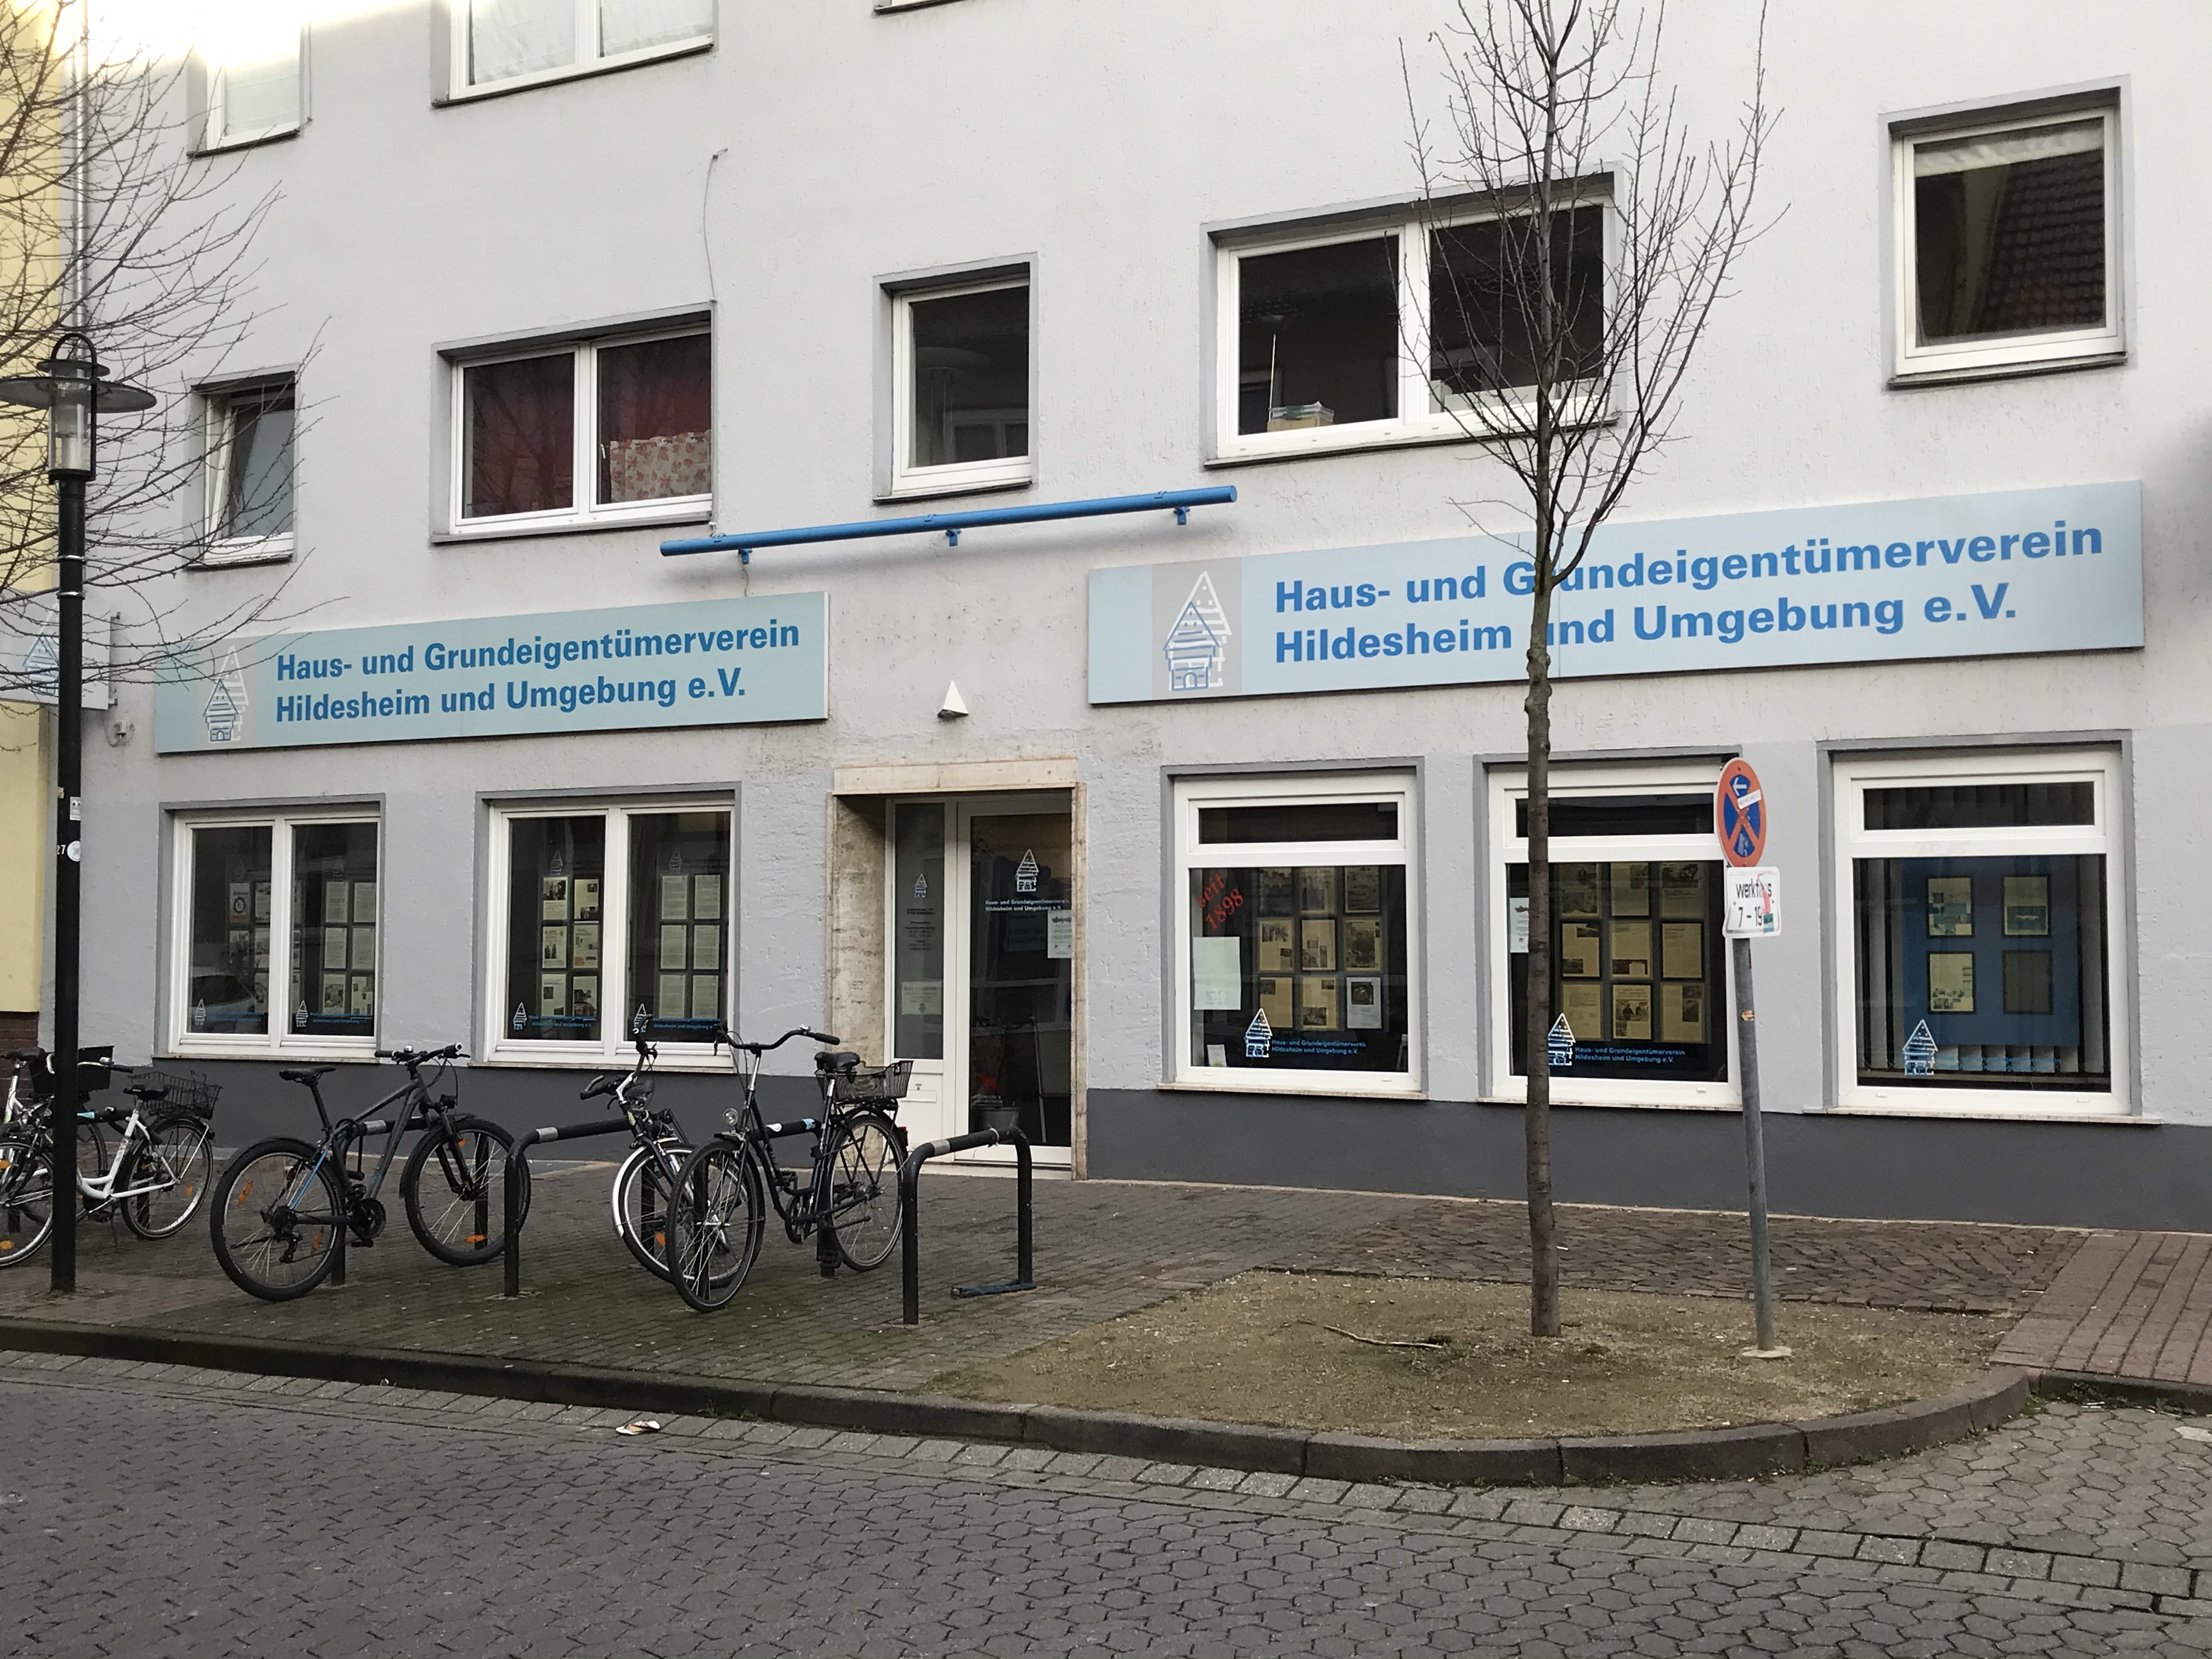 Bild 1 Haus & Grundeigentümerverein Hildesheim u. Umgebung e. V. in Hildesheim